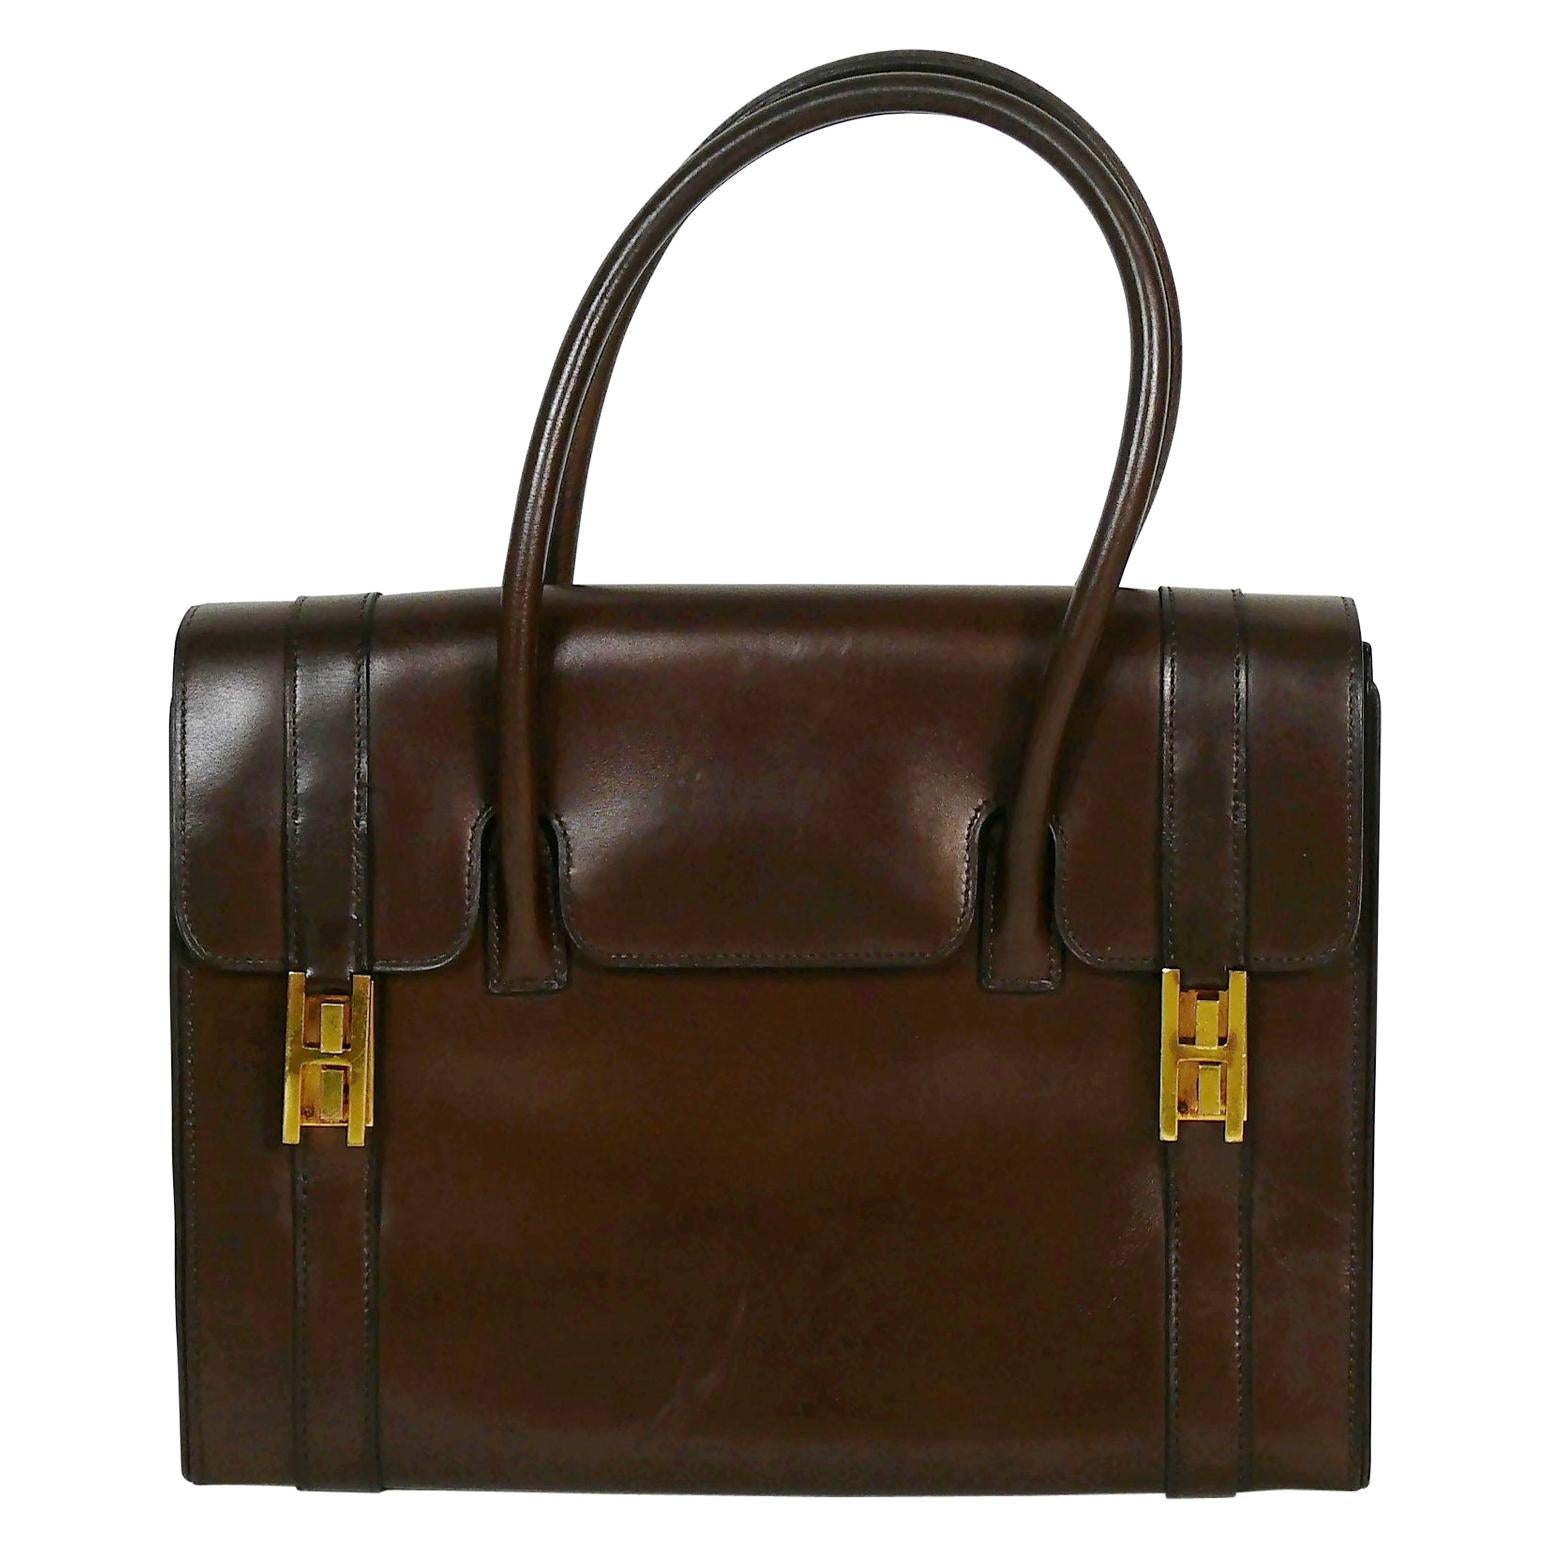 Vintage Hermes Drag Bag - 2 For Sale on 1stDibs